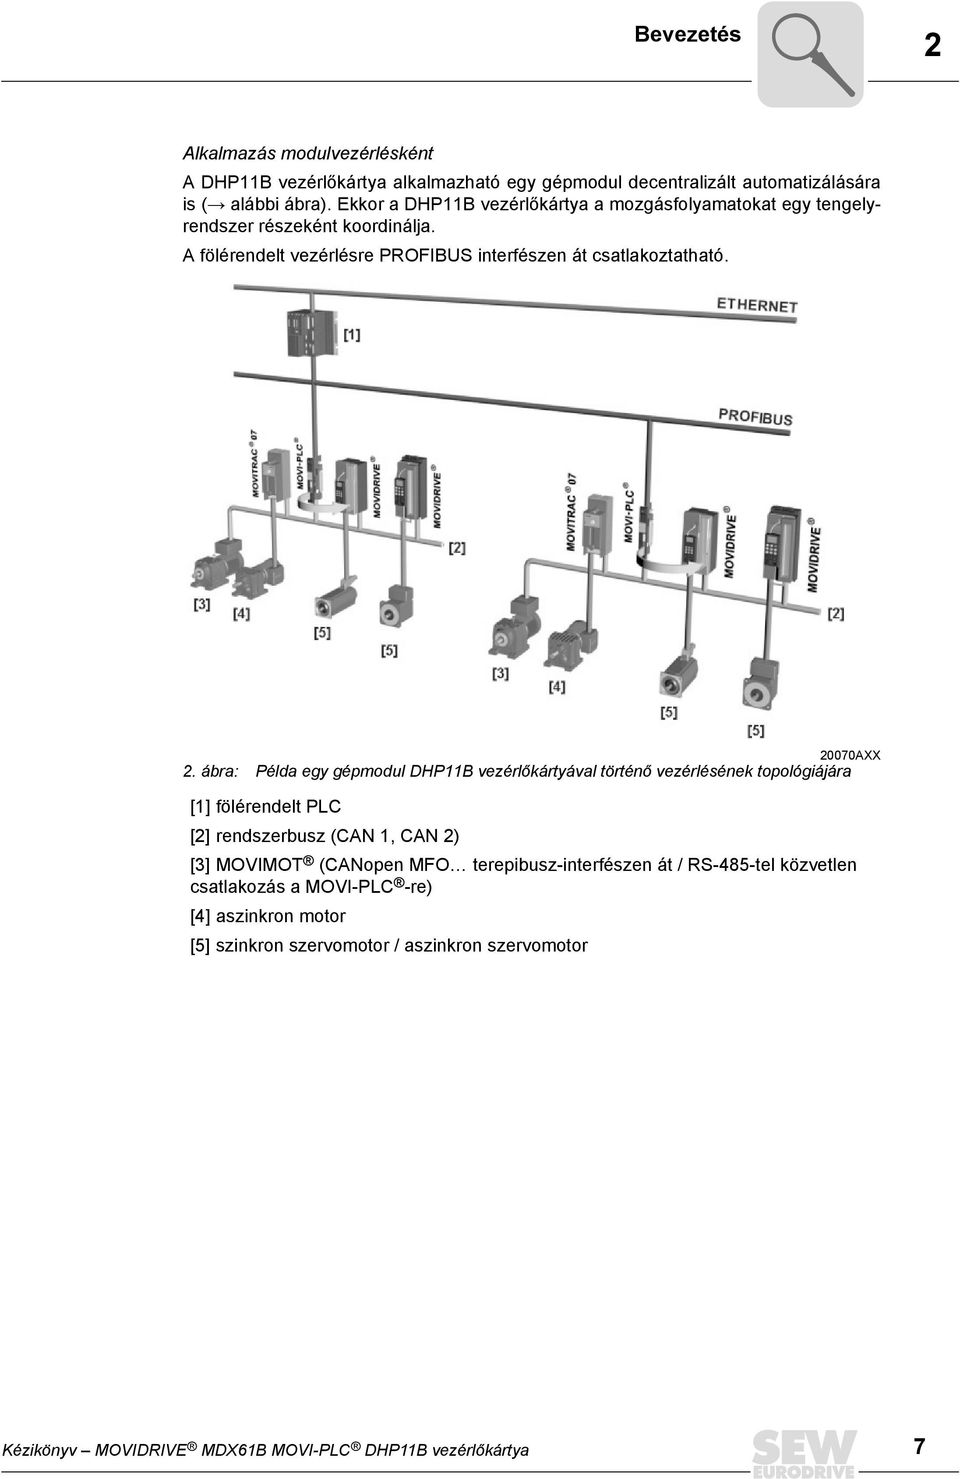 ábra: Példa egy gépmodul DHP11B vezérlőkártyával történő vezérlésének topológiájára [1] fölérendelt PLC [2] rendszerbusz (CAN 1, CAN 2) [3] MOVIMOT (CANopen MFO